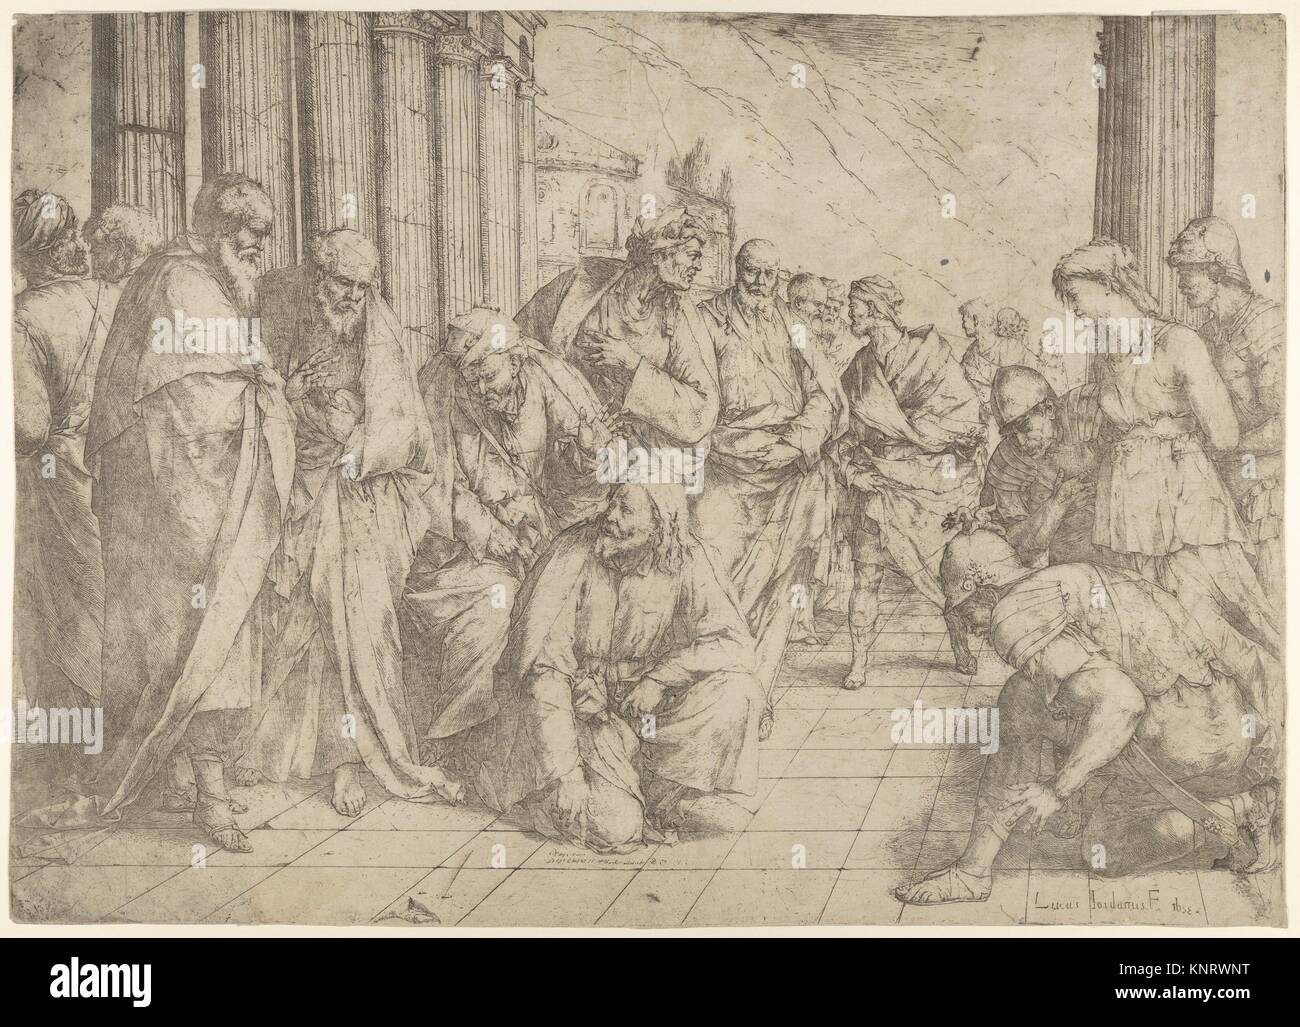 Cristo se arrodilla y escribe sobre el pavimento en el centro y la mujer sorprendida en adulterio entre tres soldados de la derecha. Artista: Luca Giordano Foto de stock